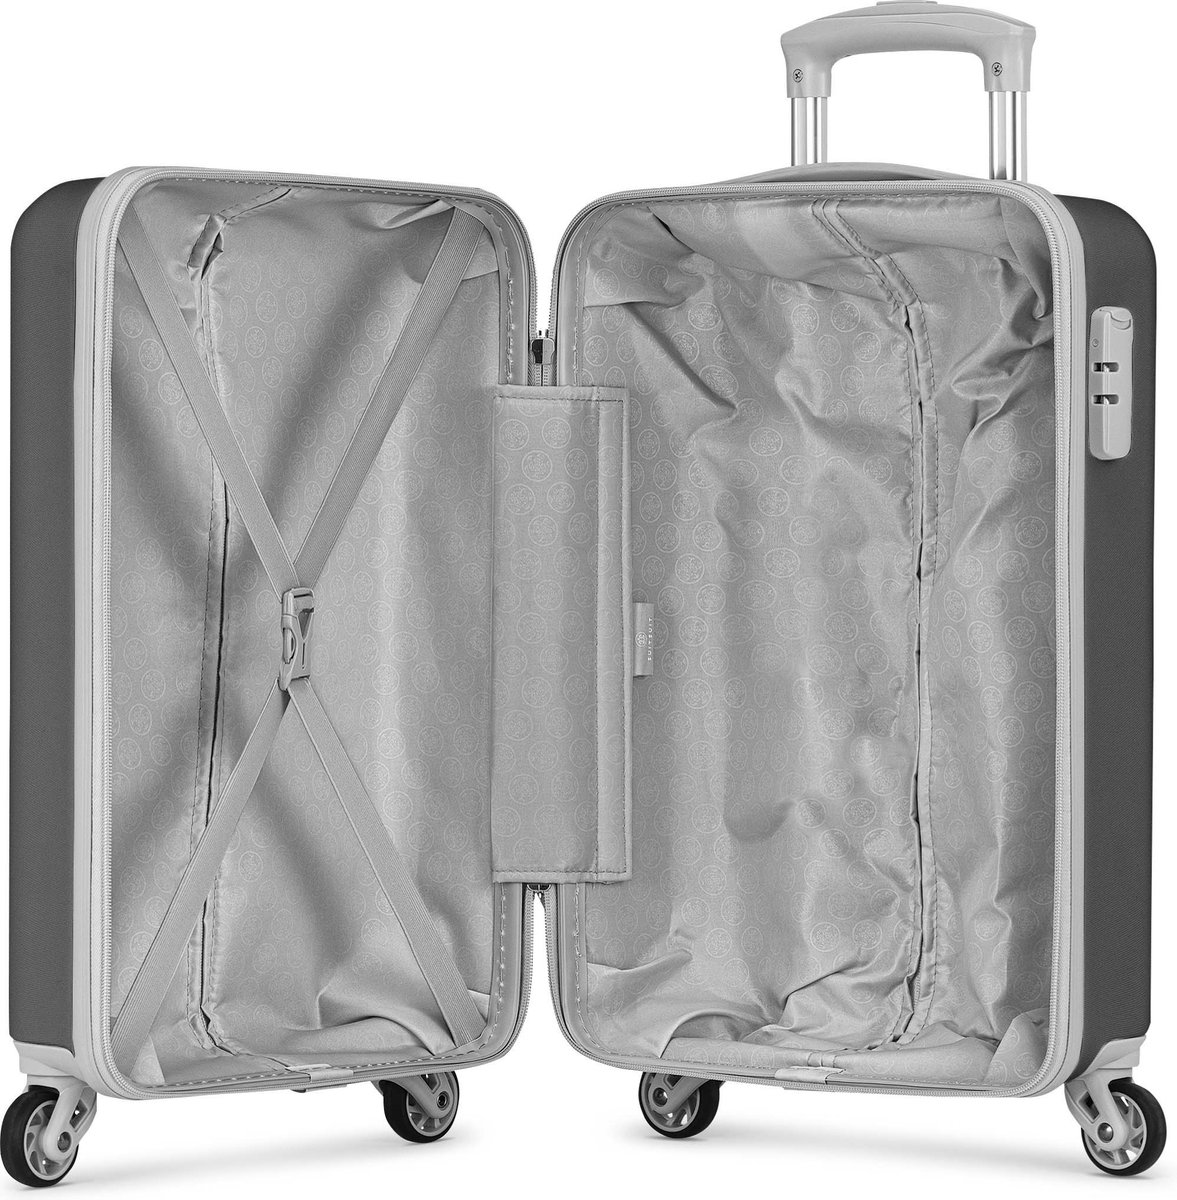 Elektronisch licht Recyclen 10x De beste handbagage koffer voor je volgende reis